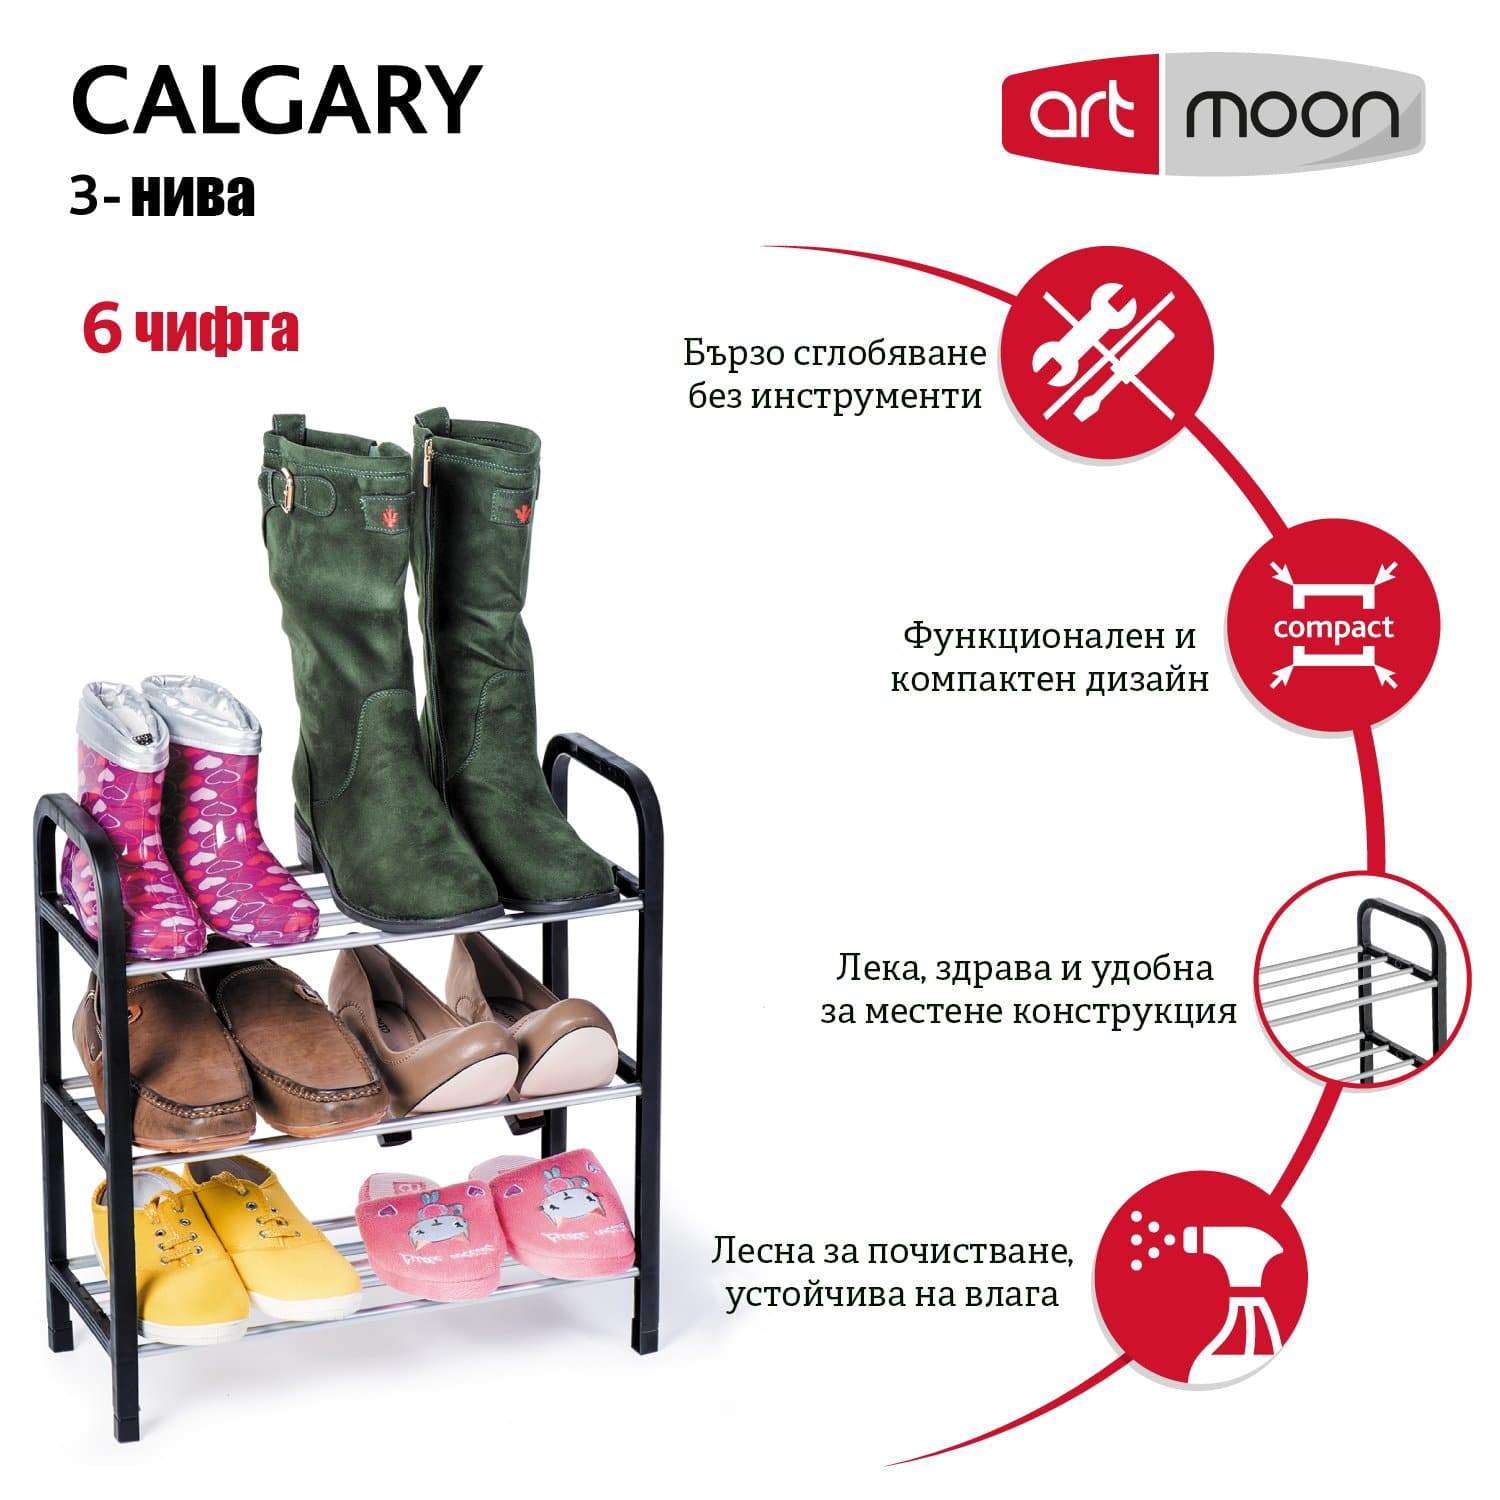 Art moon Calgary Поставка за Обувки за до 6 Чифта - 3 Нива - Terzico